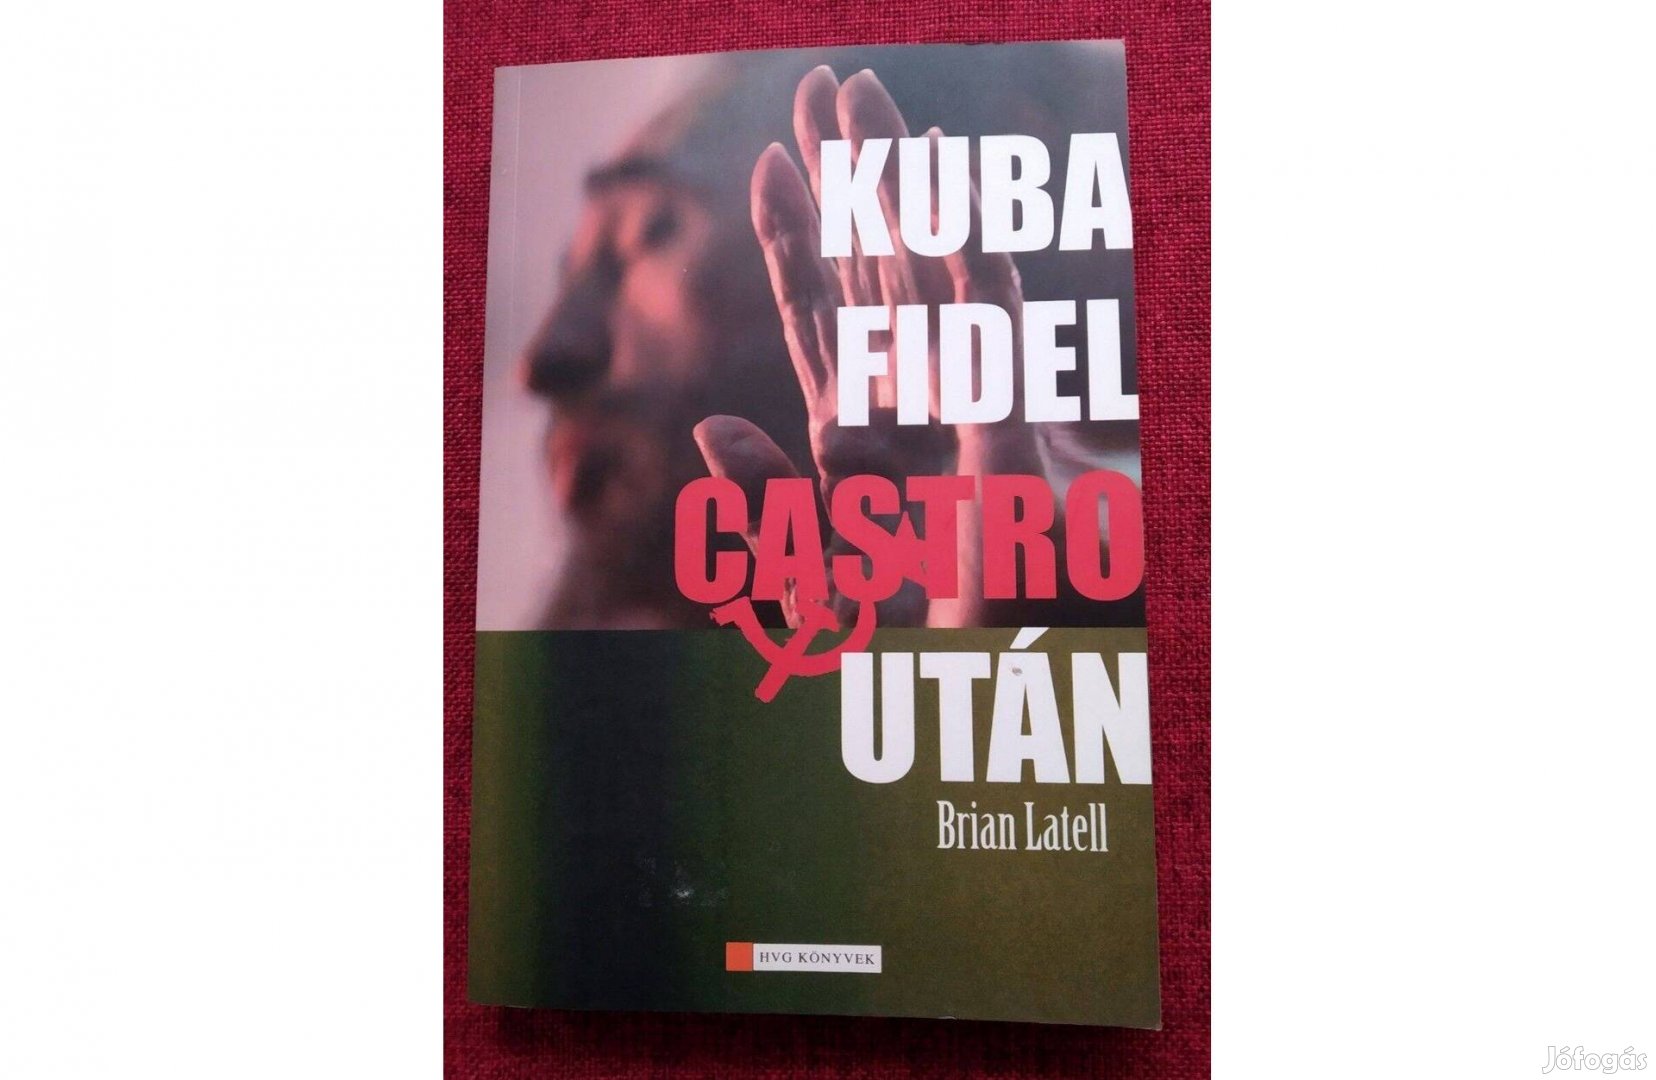 Kuba Fidel Castro után Brian Latell HVG Könyvek kiadó, 2008